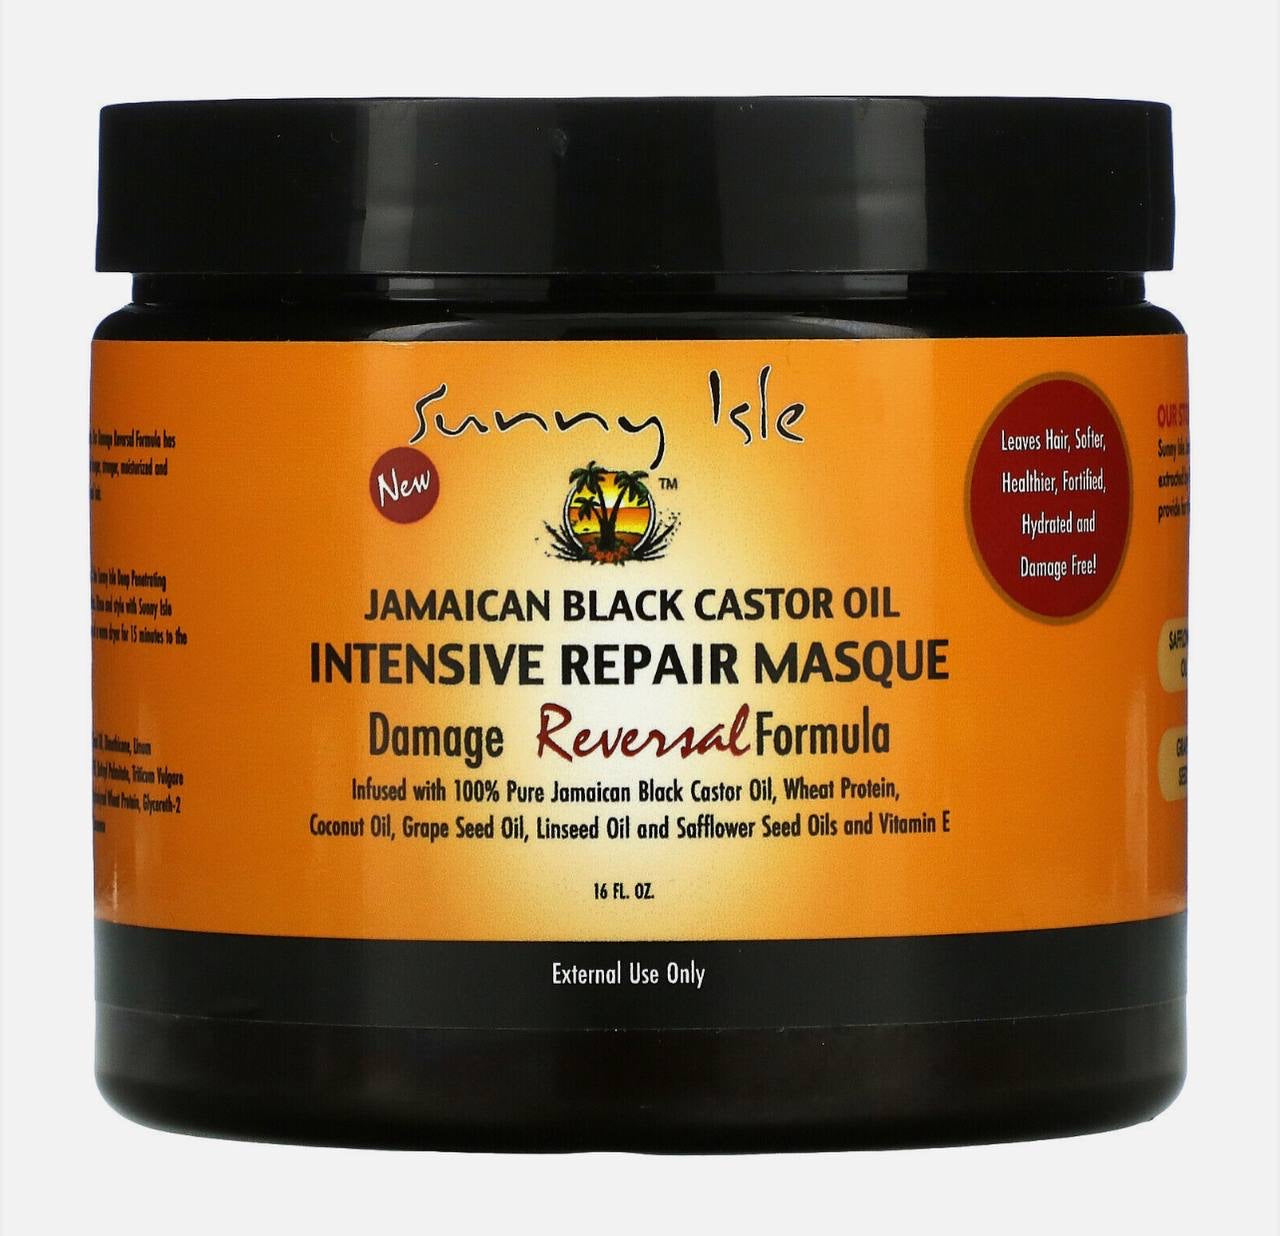 Jamaican black castor oil intensive repair mask